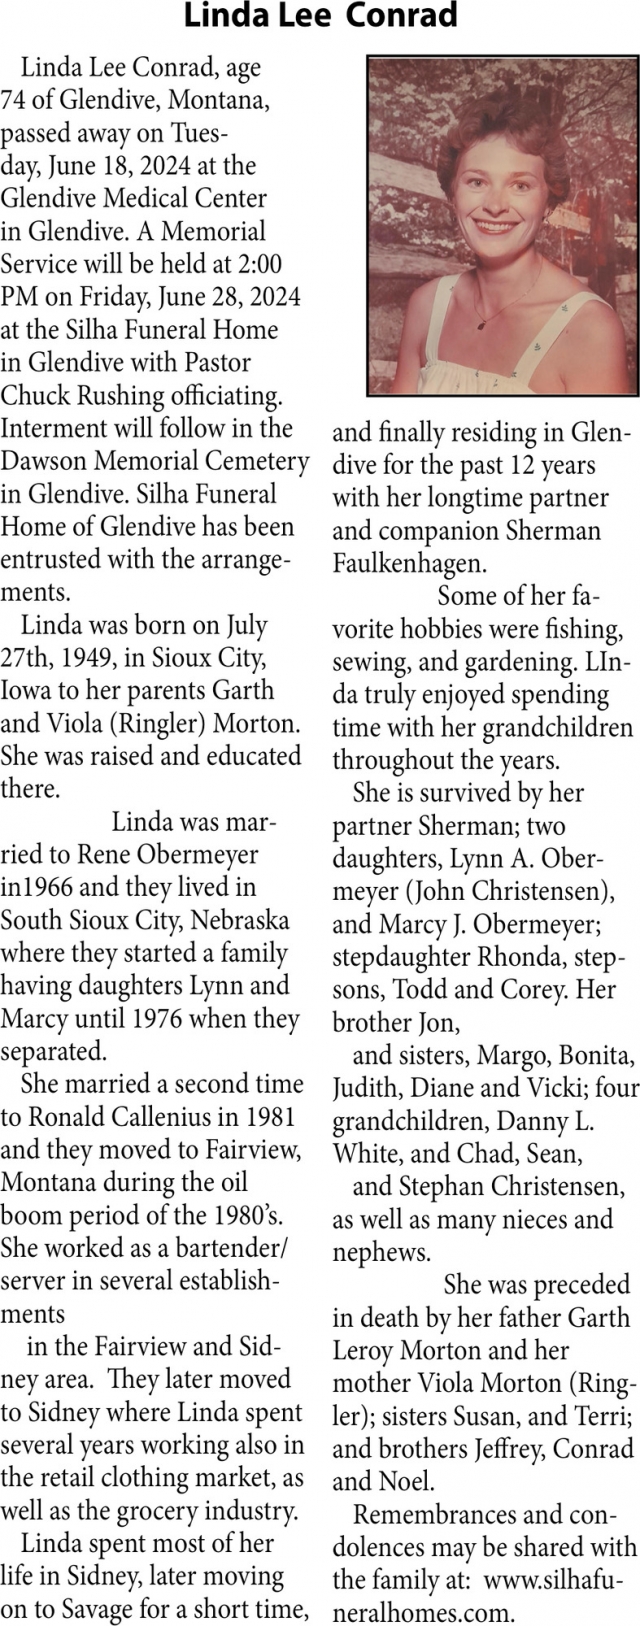 Linda Lee Conrad, Obituaries, Glendive, MT